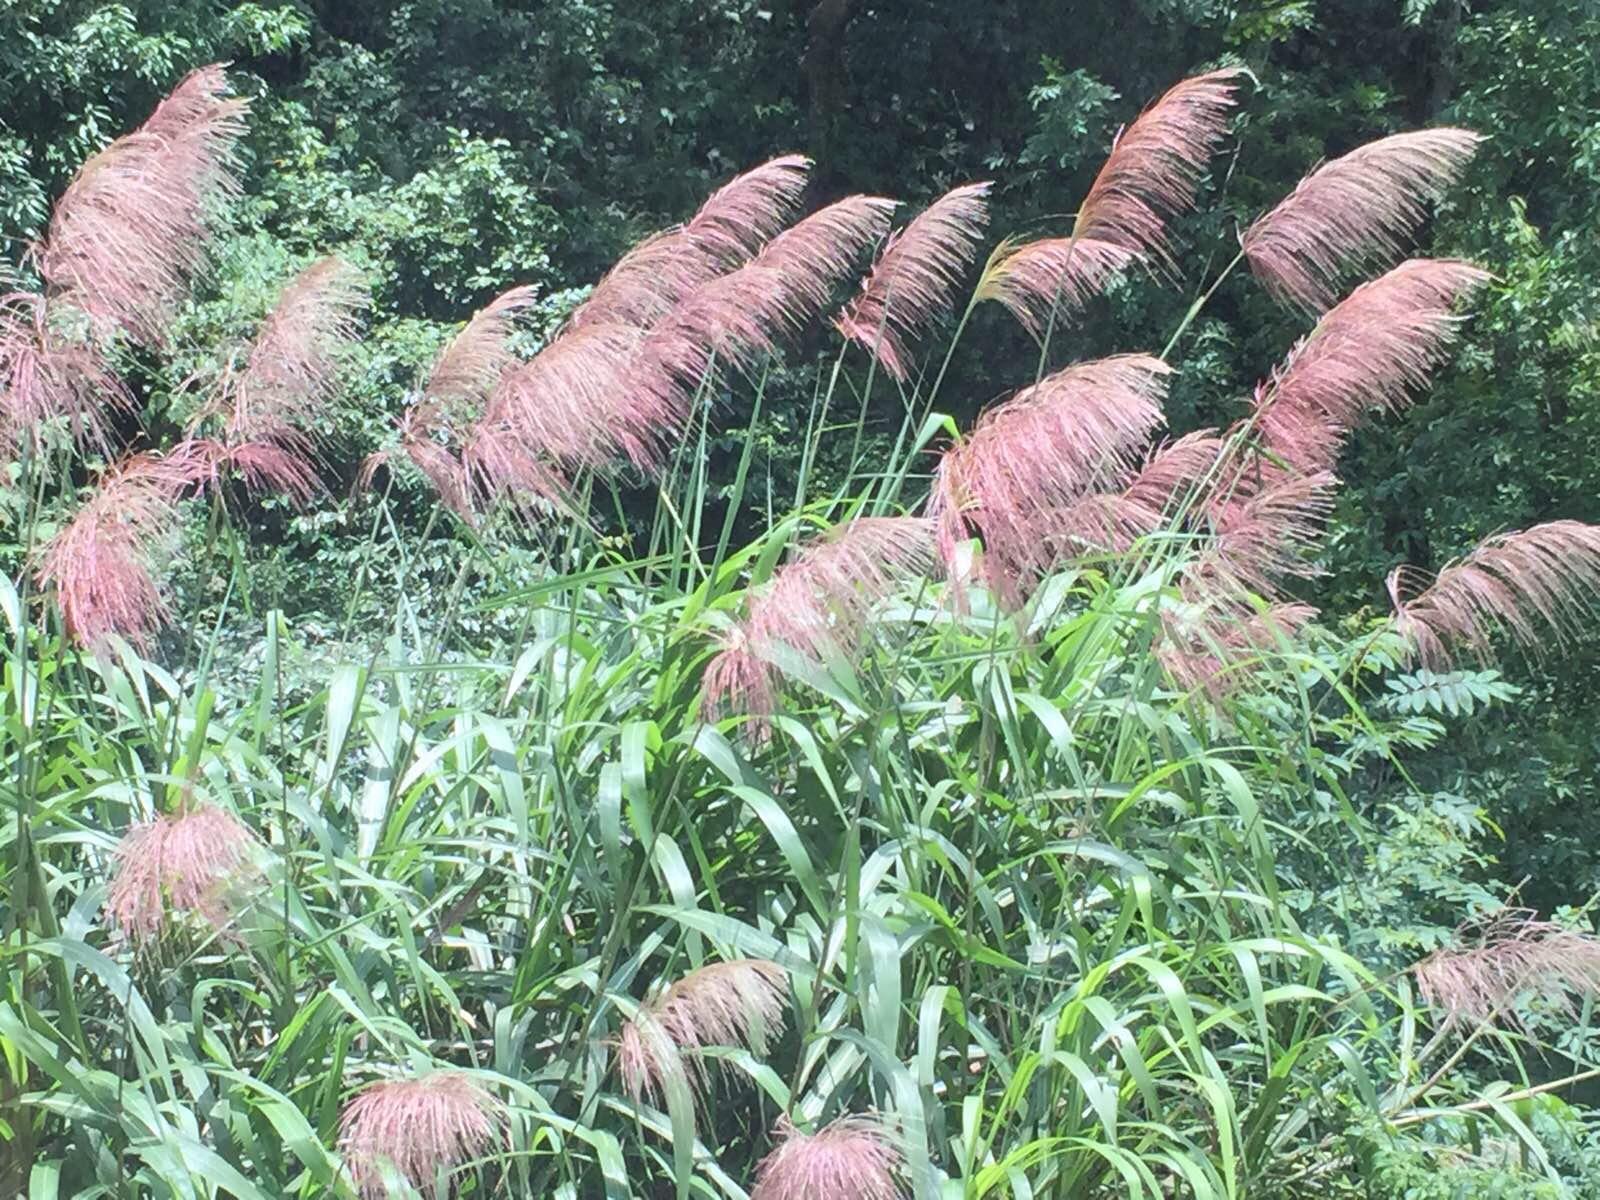 小时候常见的红茅草,20年后再看到,兴奋之余还有亲切感. 龙脊梯田